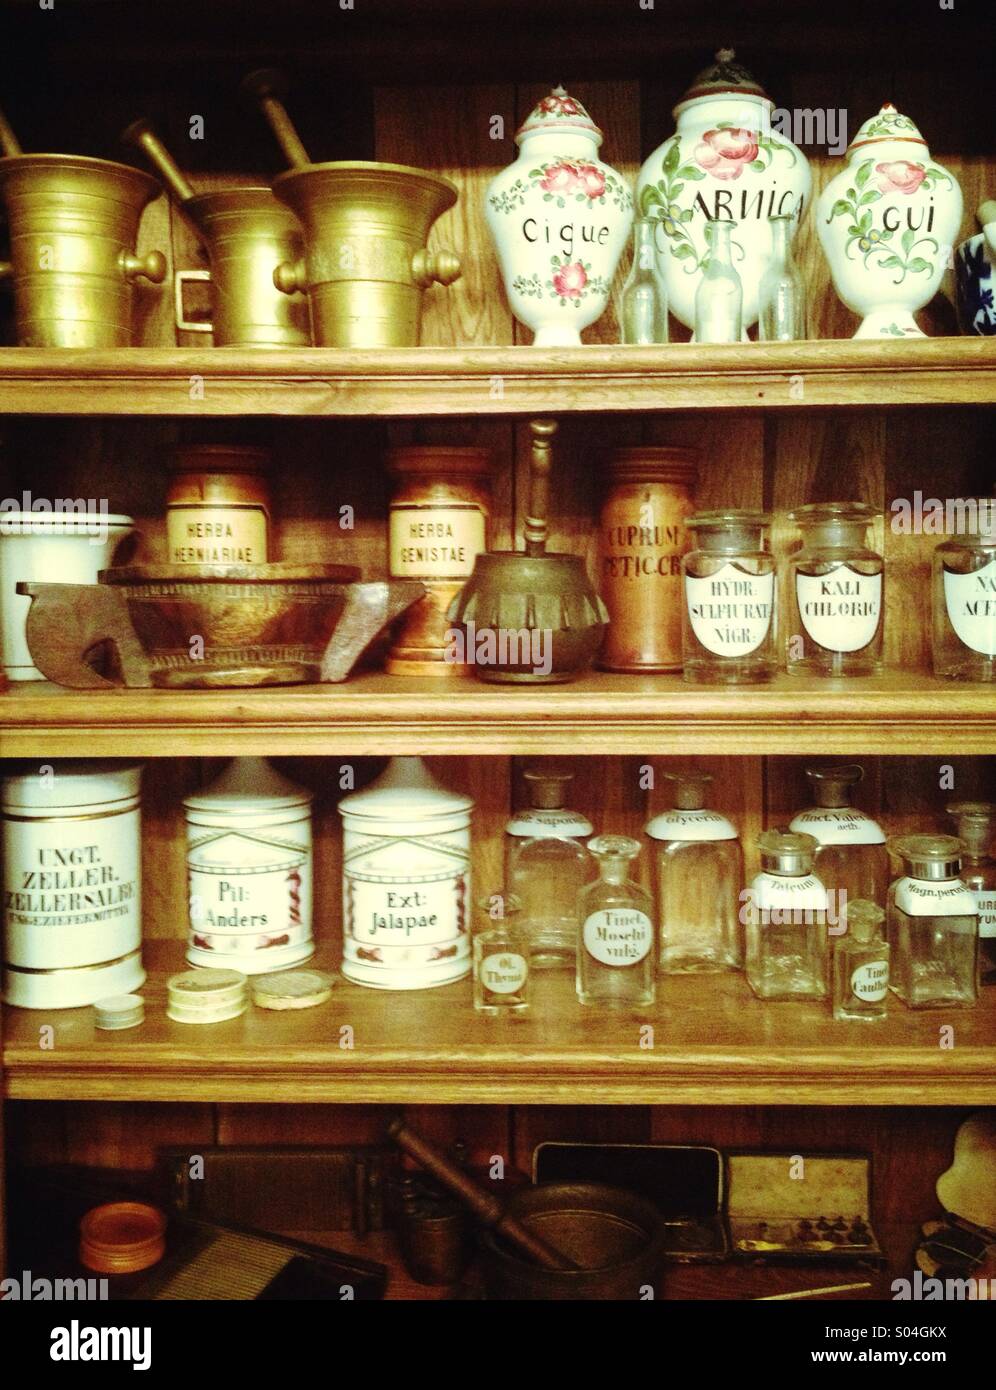 Apotheke, vintage apothecary display on shelf Stock Photo